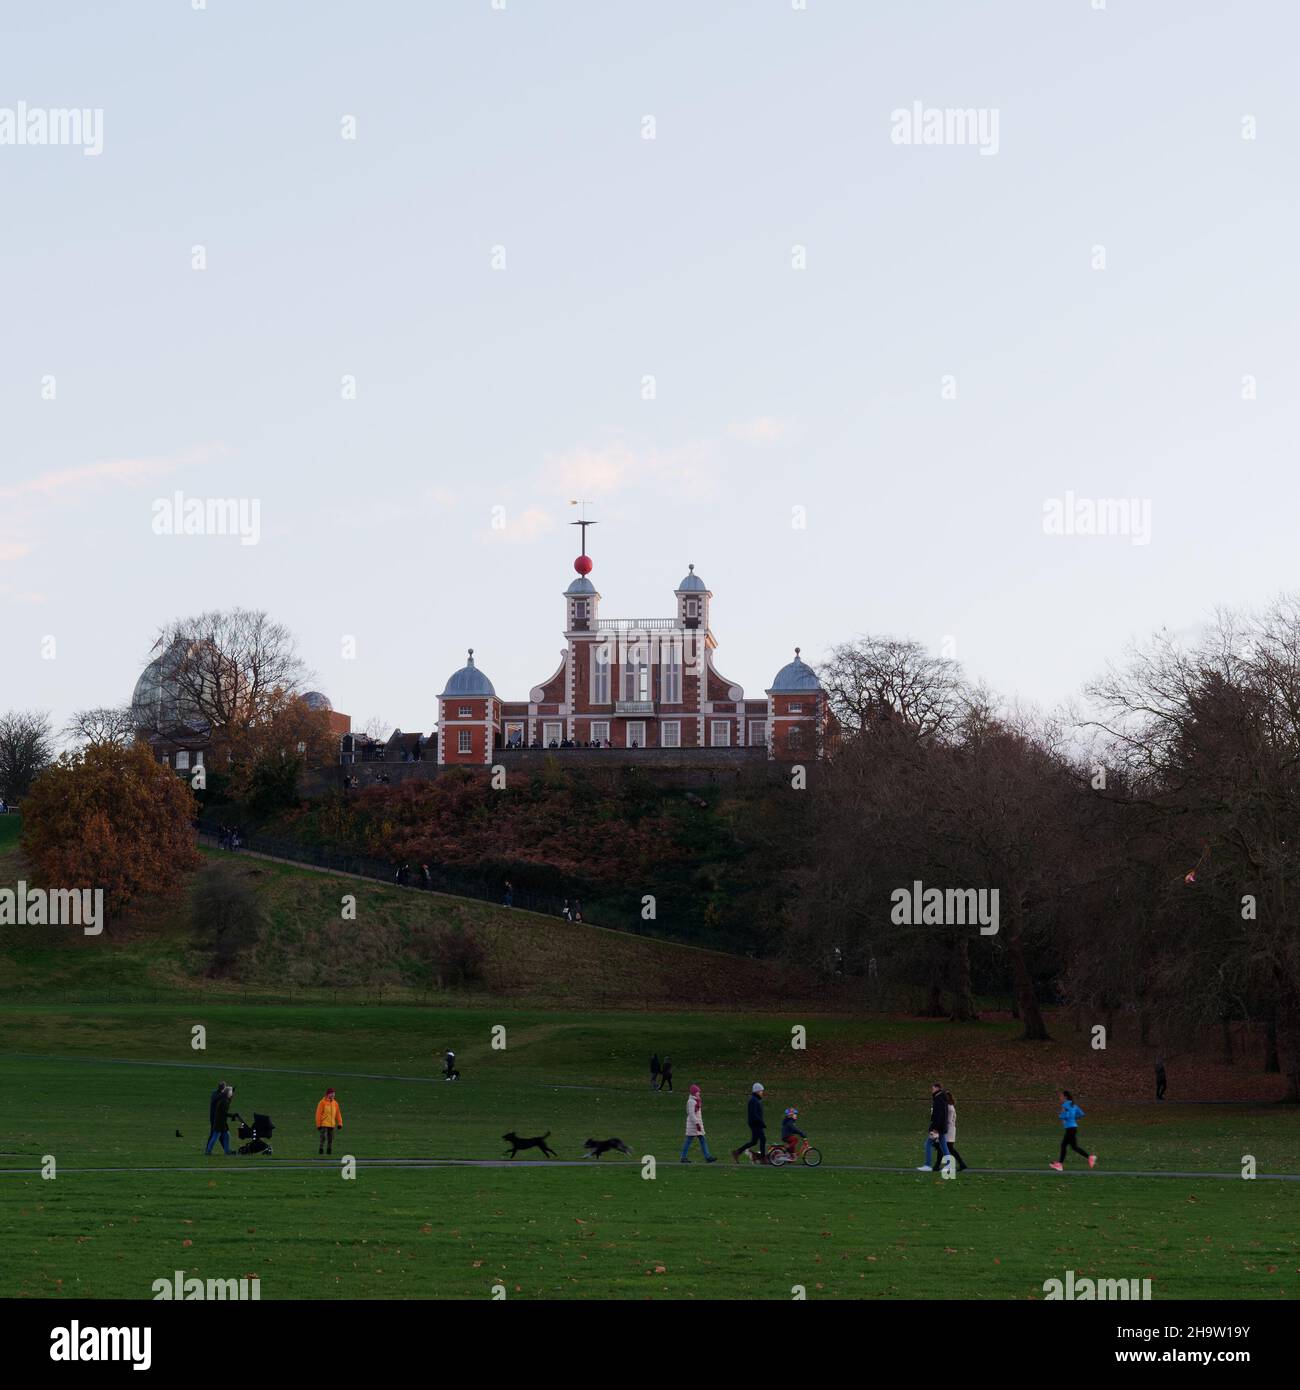 Londra, Greater London, Inghilterra, dicembre 04 2021: Famiglie che camminano a Greenwich Park con il Royal Observatory sulla collina alle spalle. Foto Stock